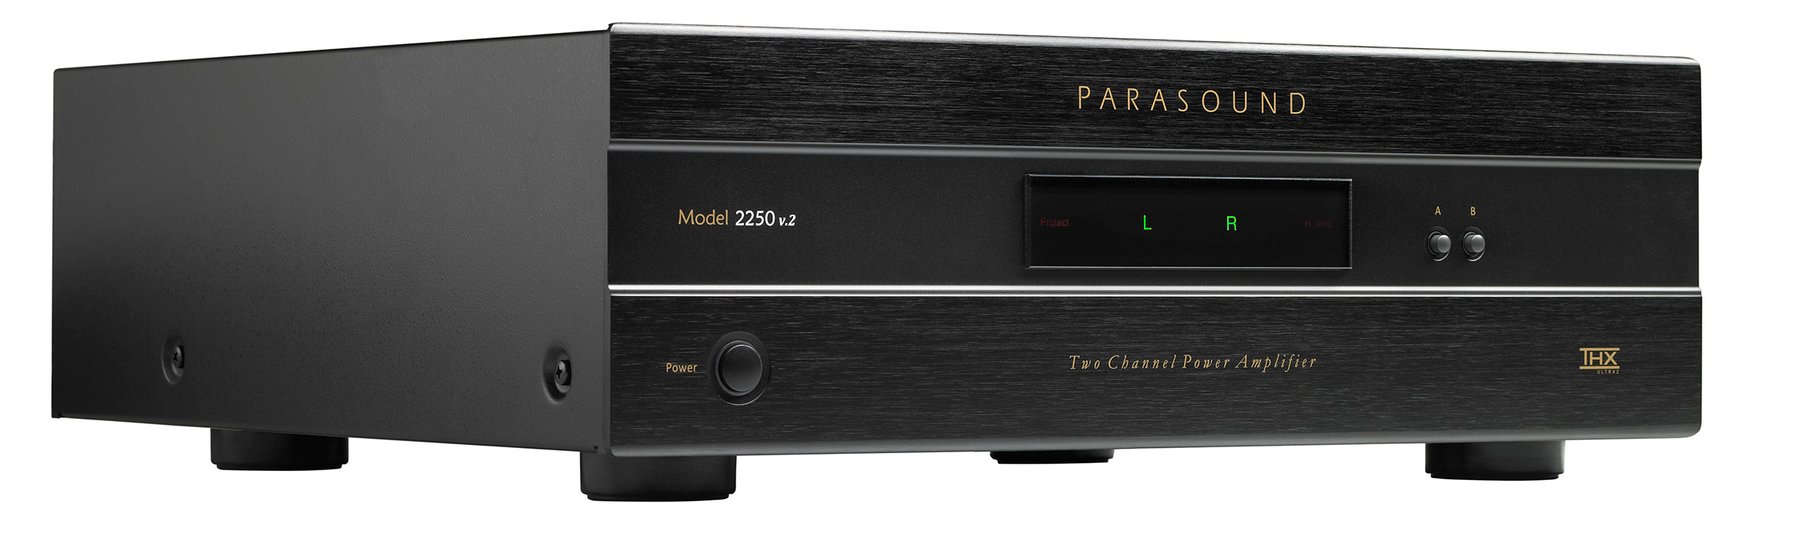 Усилитель мощности Parasound NewClassic 2250 V.2